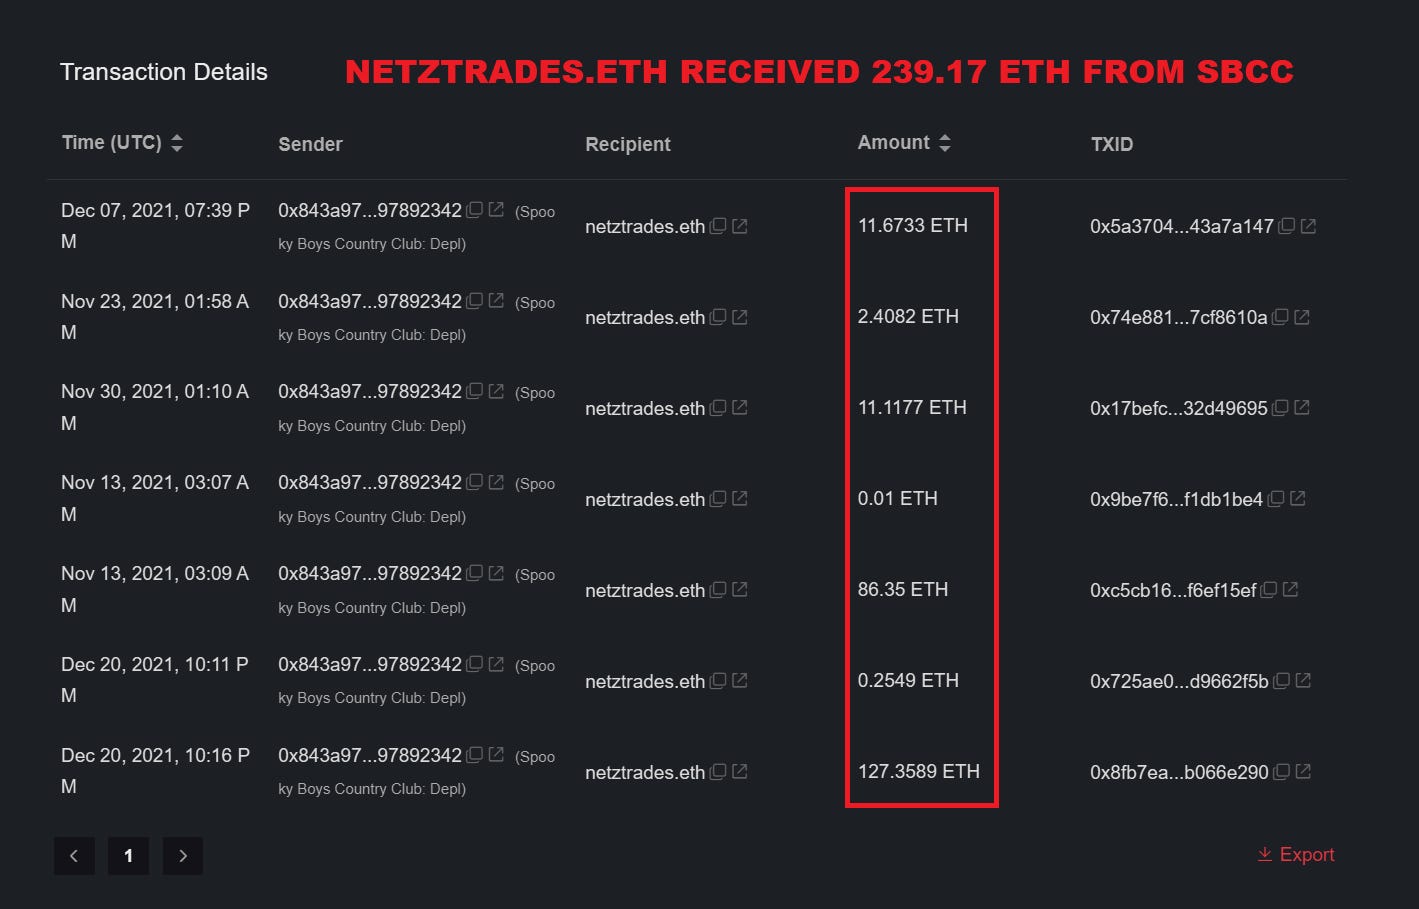 Netztrades.eth received 239 eth